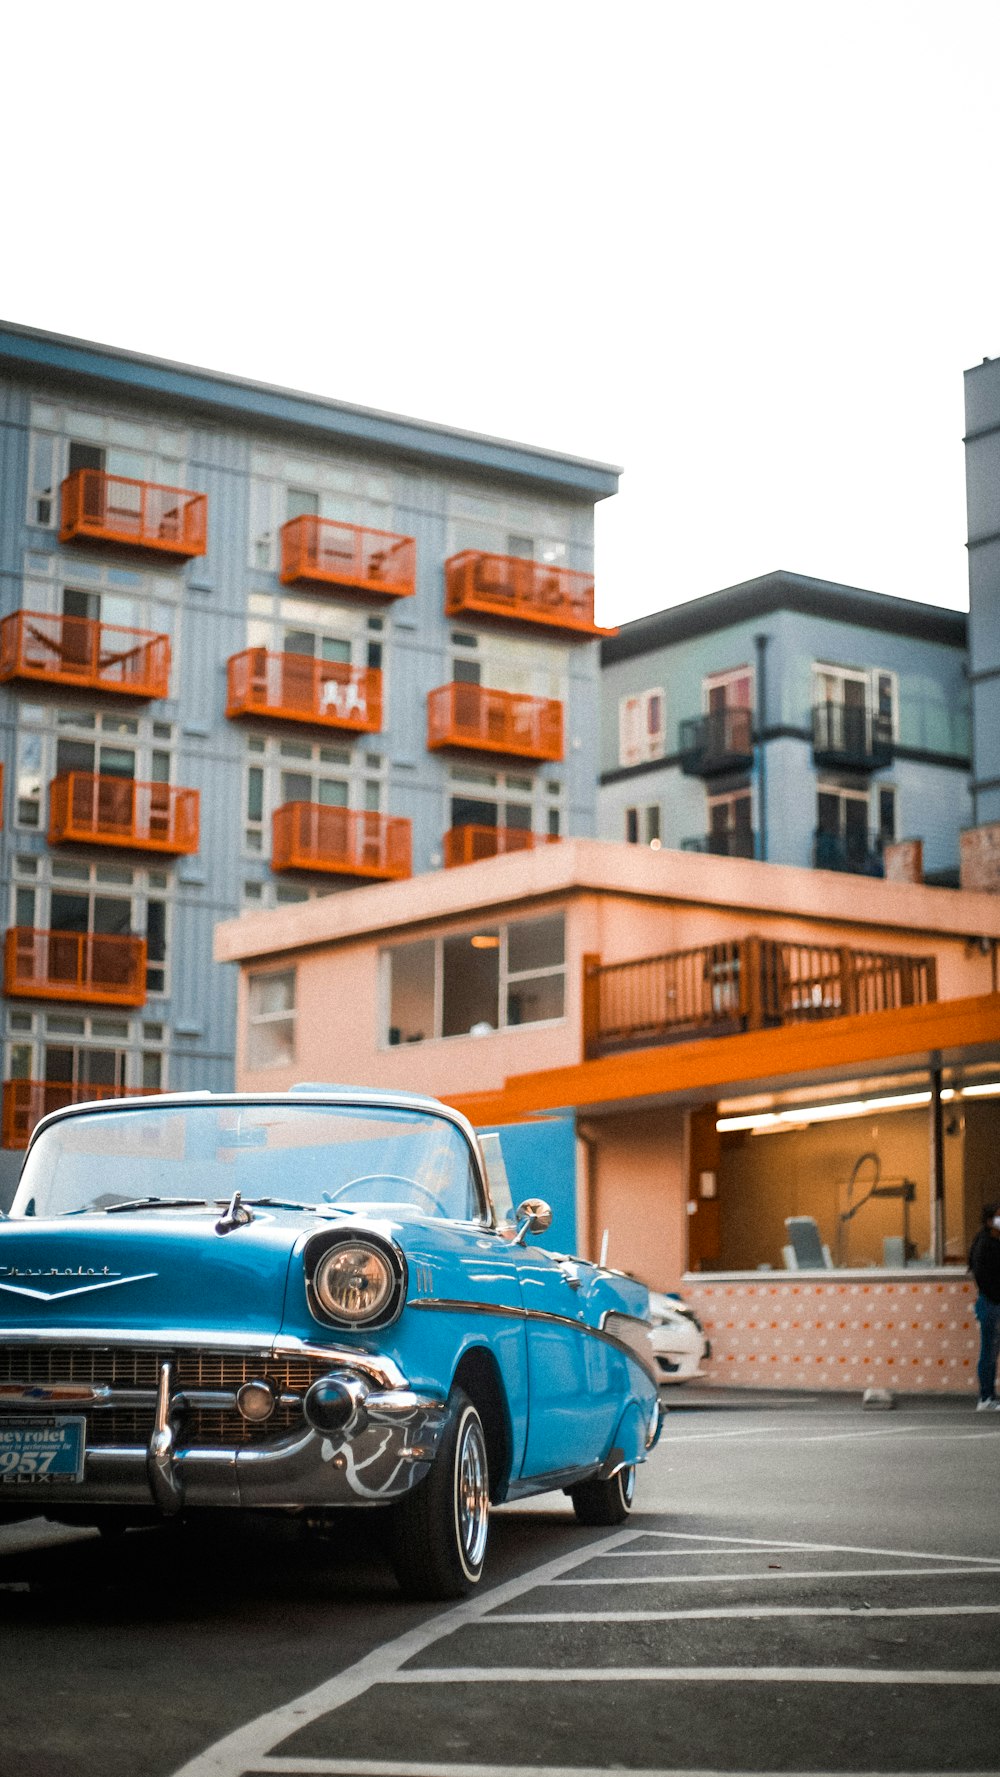 낮 동안 브라운 빌딩 근처에 주차 된 파란색 자동차